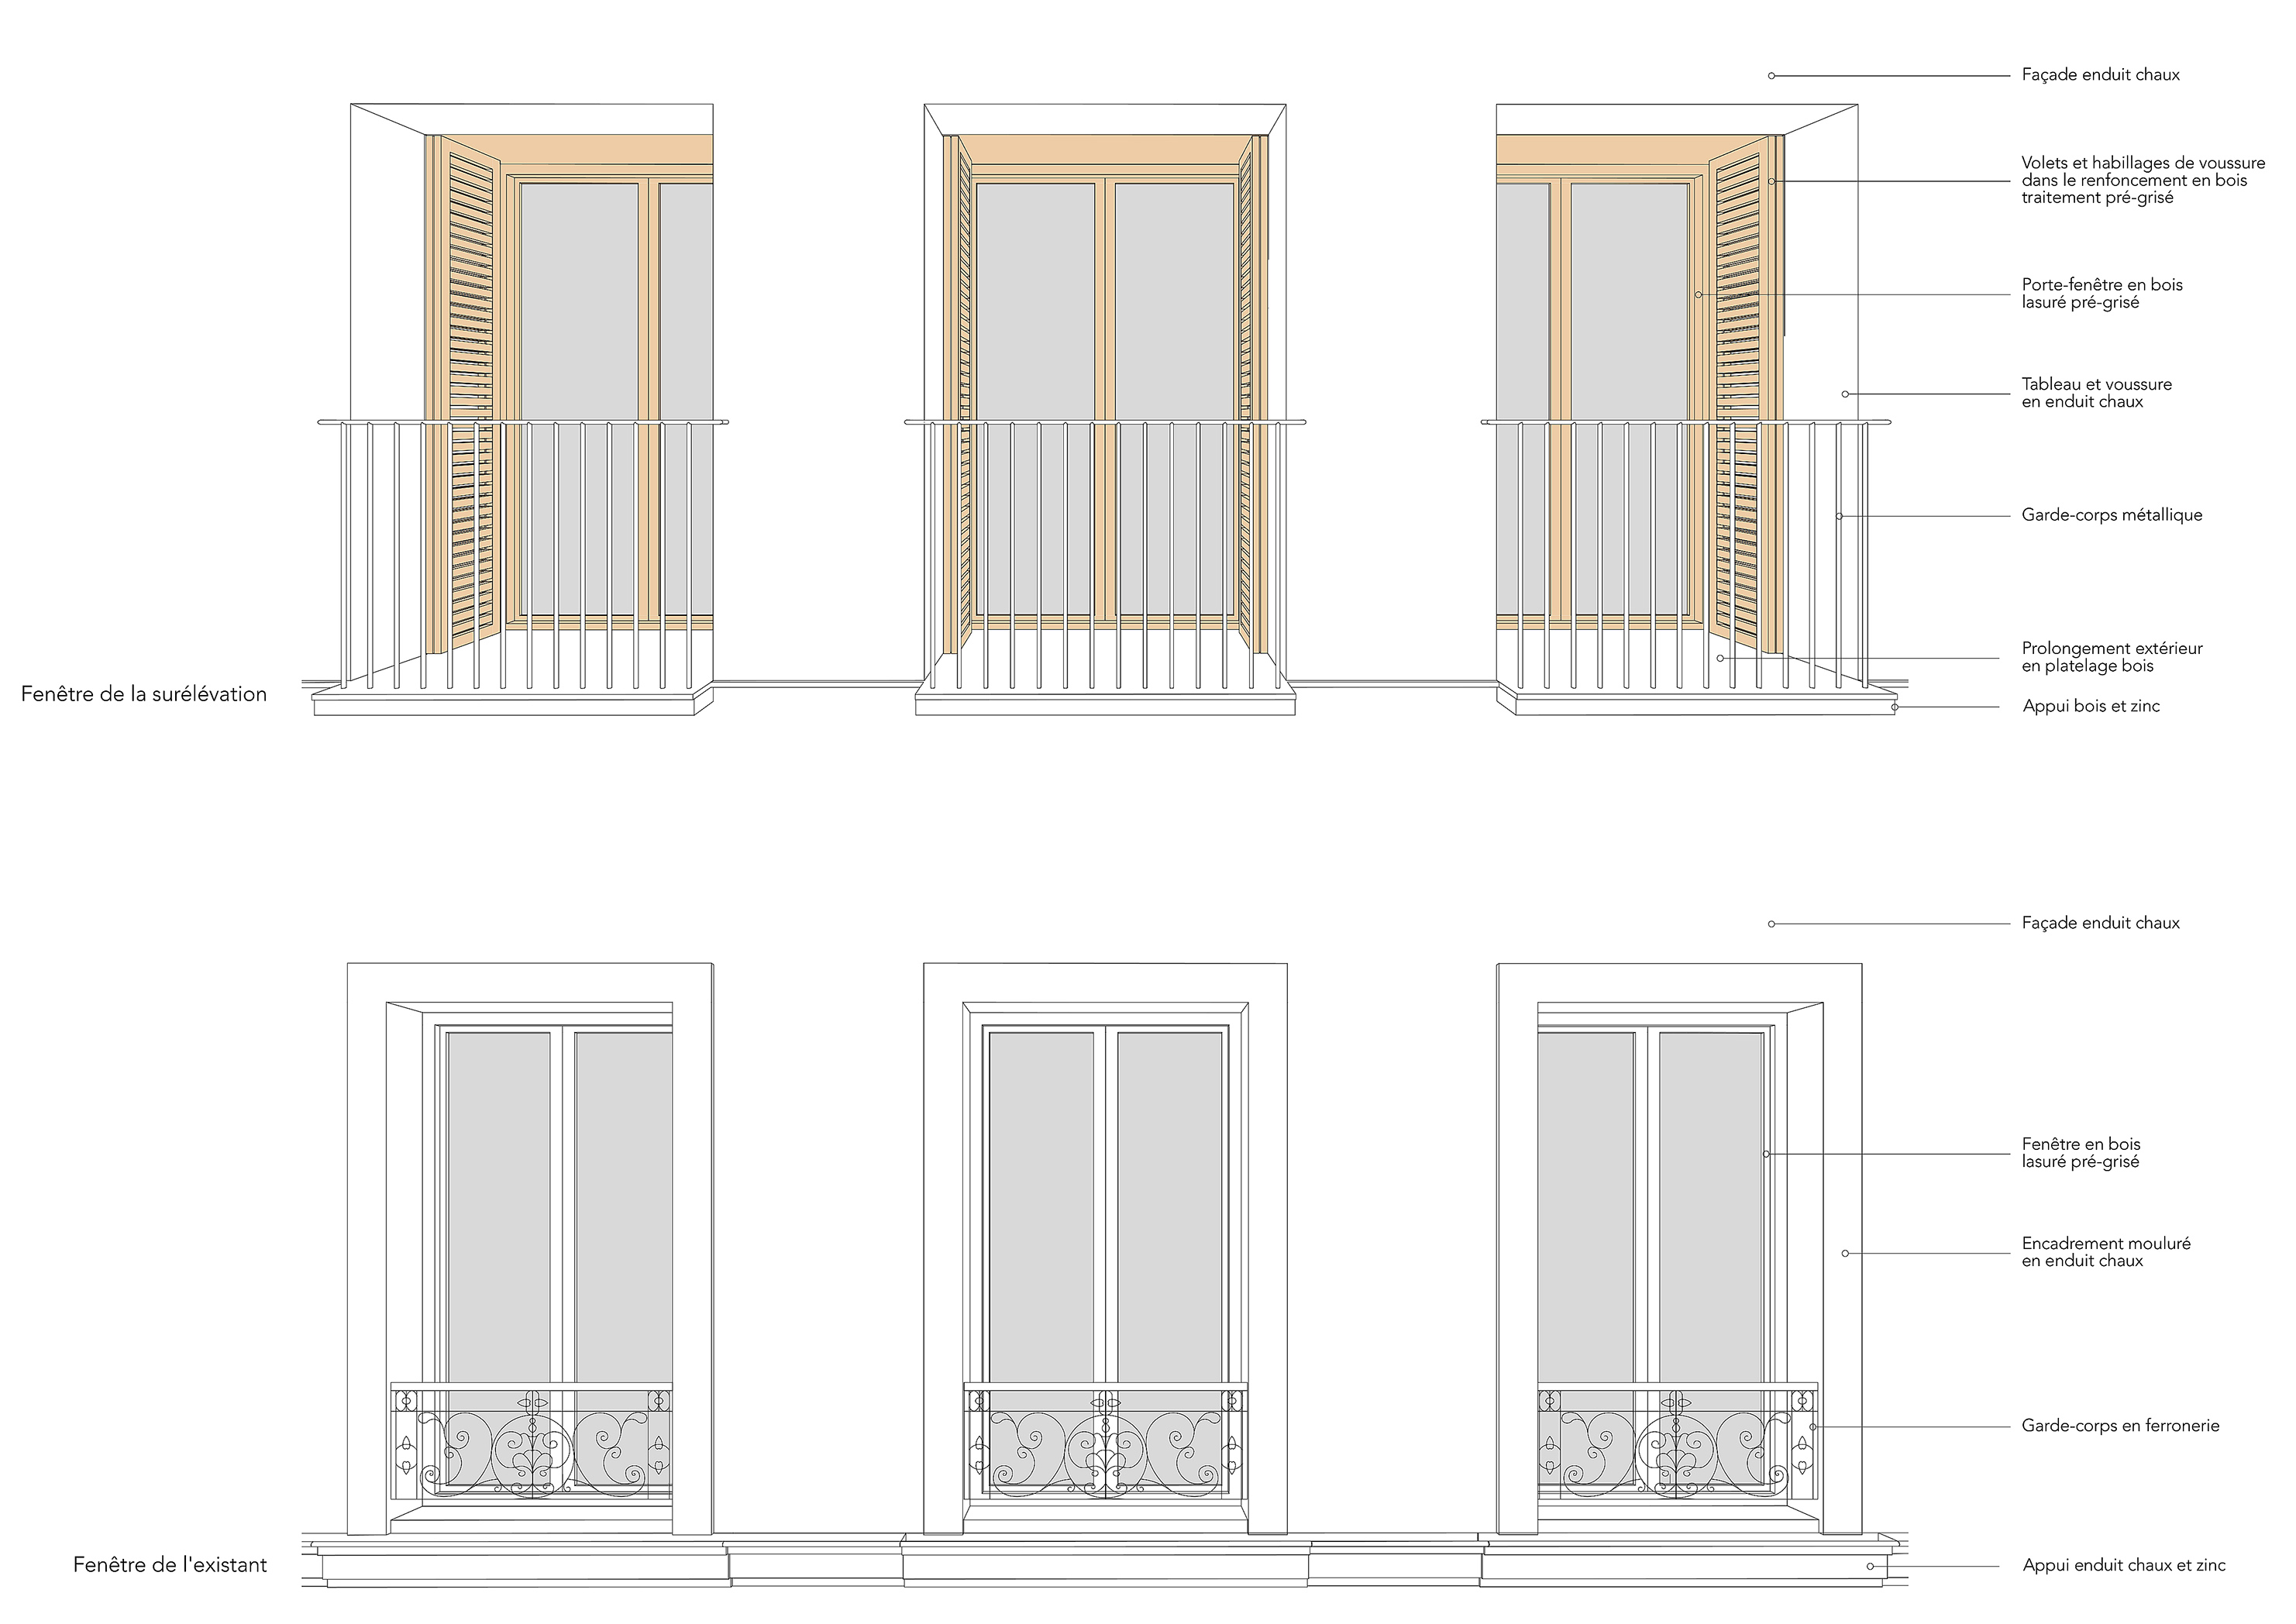 25 logements en restructuration et extension à Paris XIIe - Typologie des fenêtres en surélévation